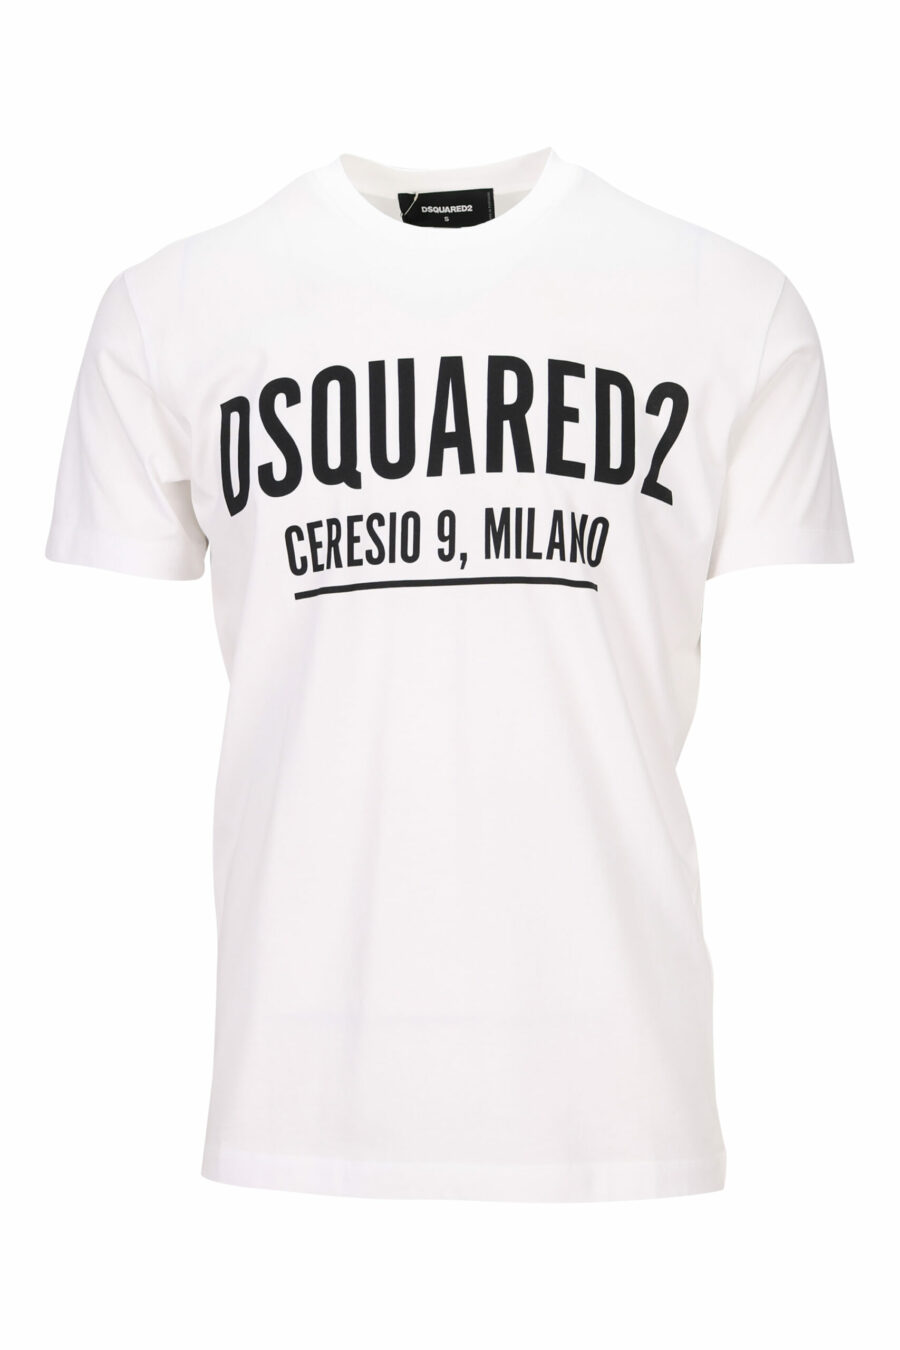 T-shirt branca com o maxilogo "ceresio 9, milano" - 8054148504779 scaled